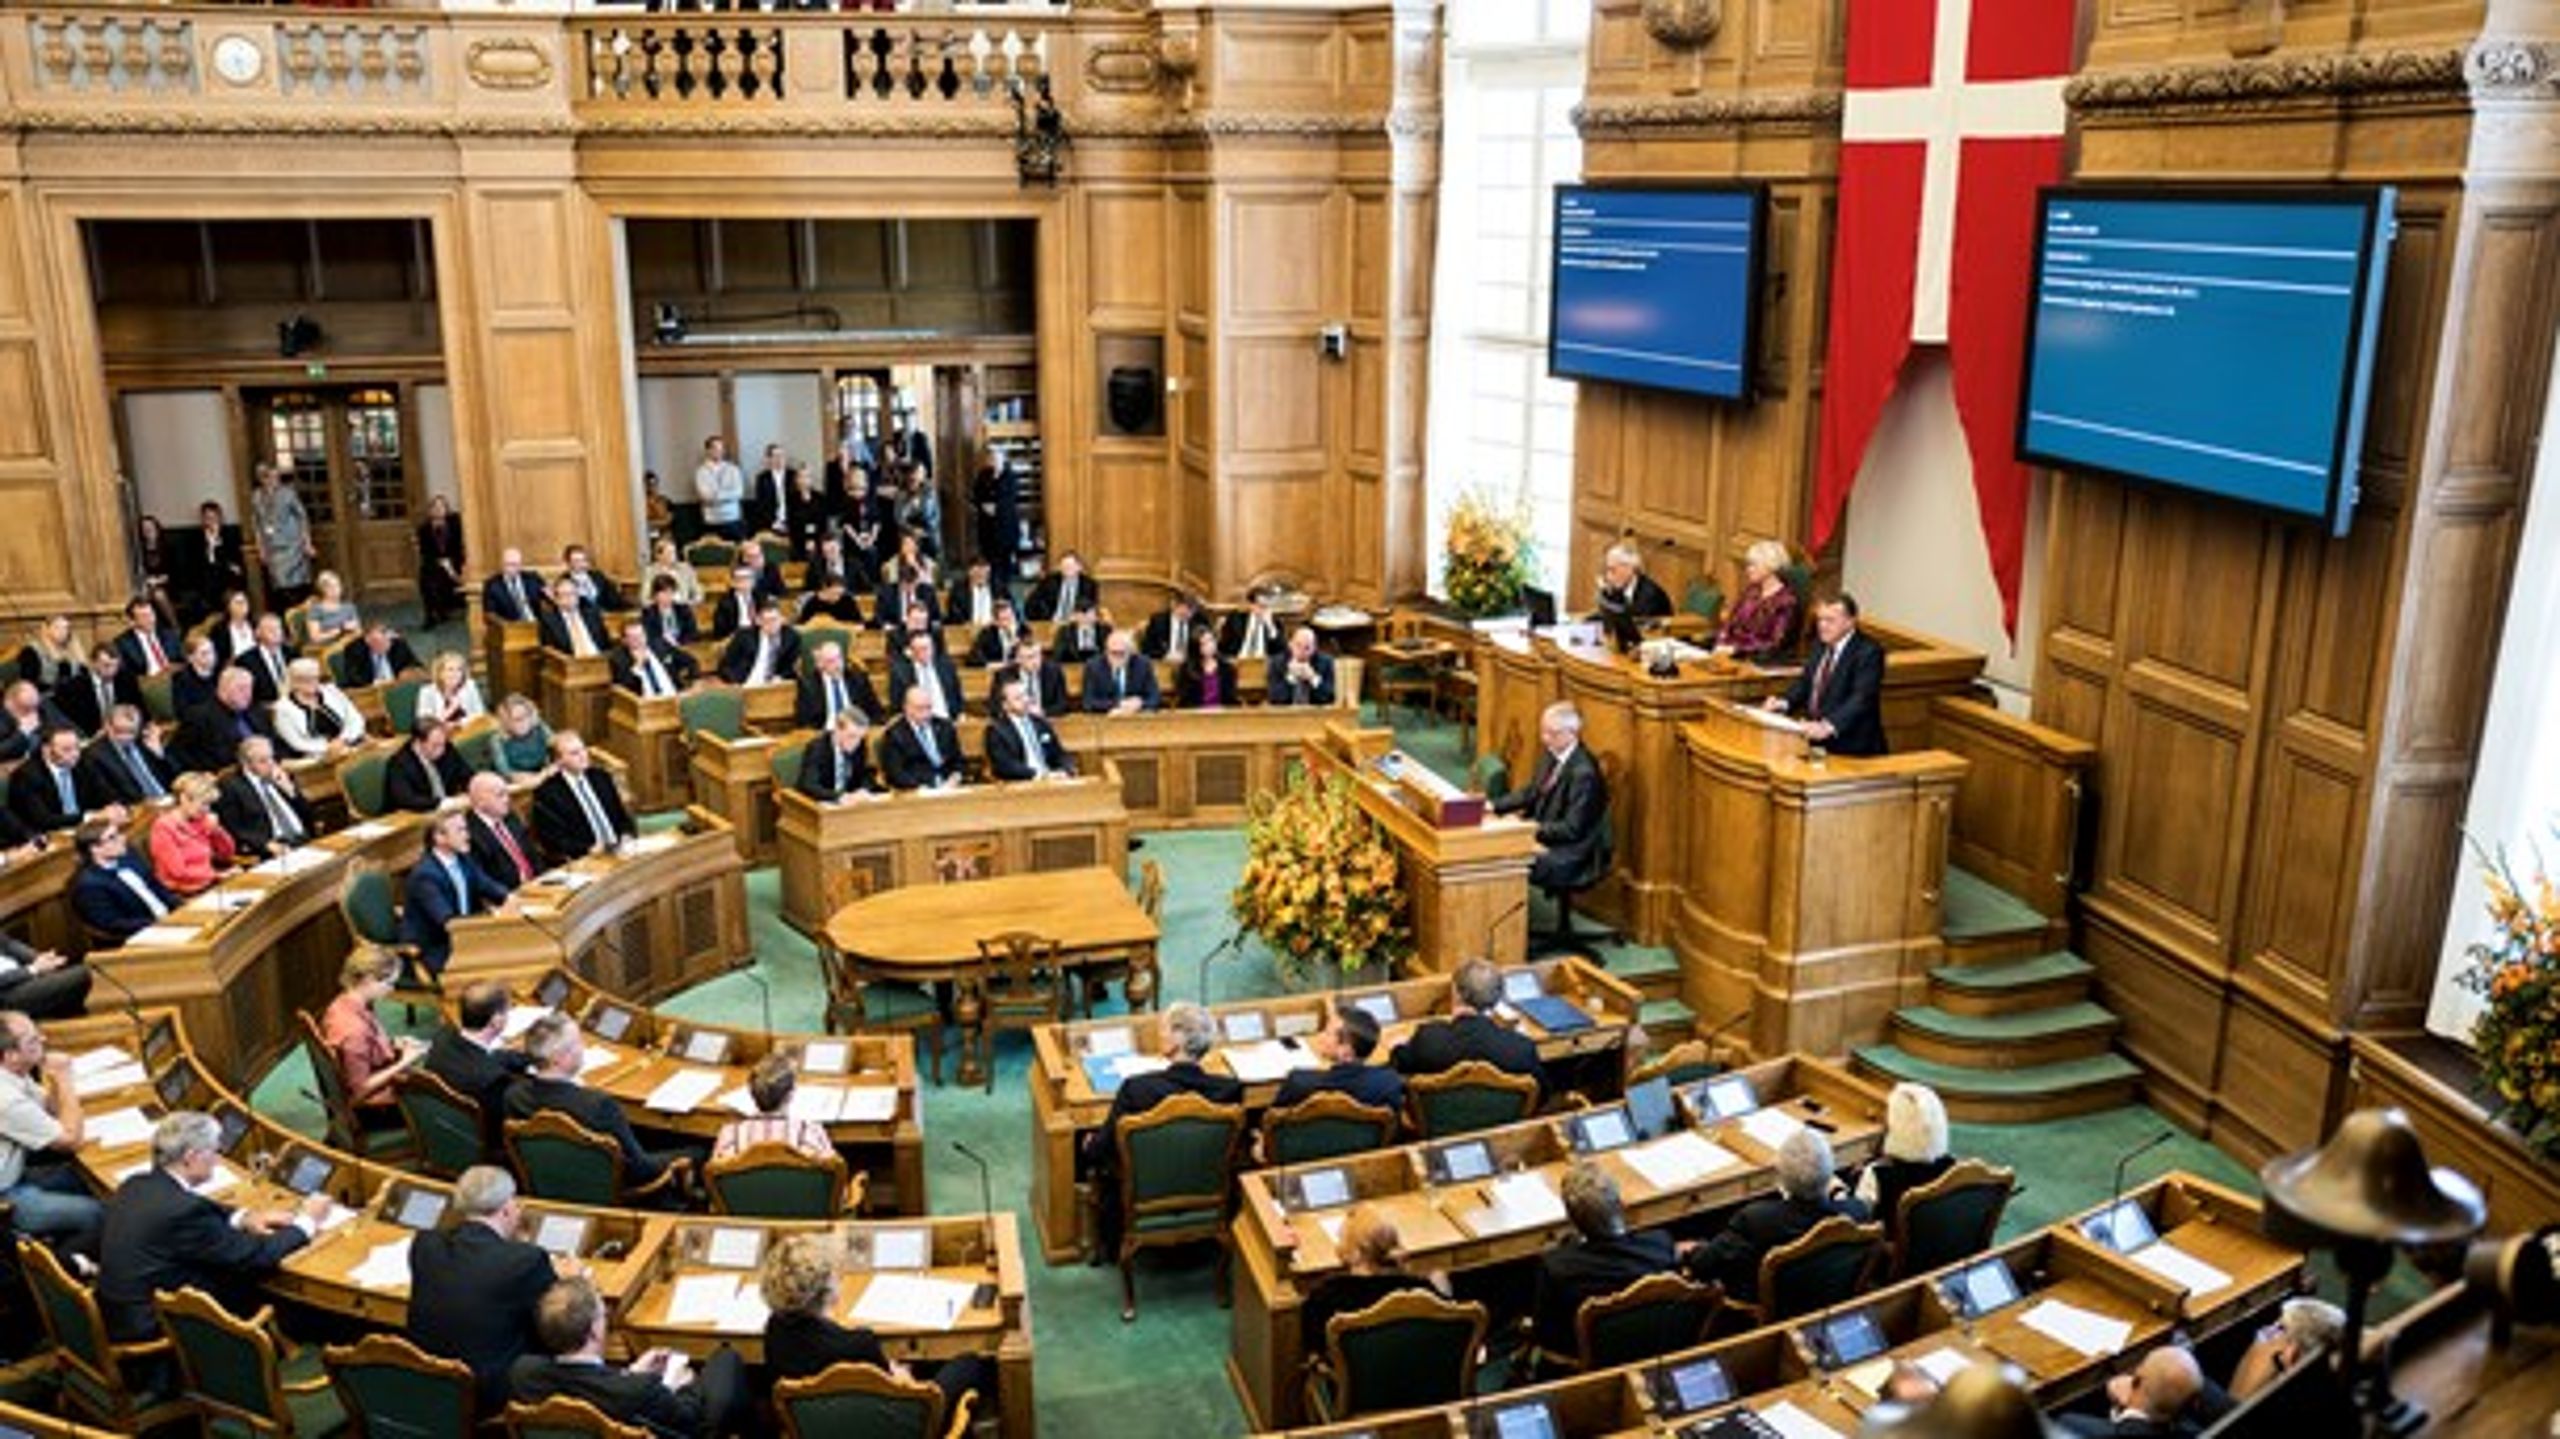 Et udsnit af Folketingets 179 medlemmer kommer til at følge briternes ventede EU-exit tæt. Det sker i en såkaldt følgegruppe, der konstitueres på Christiansborg torsdag.